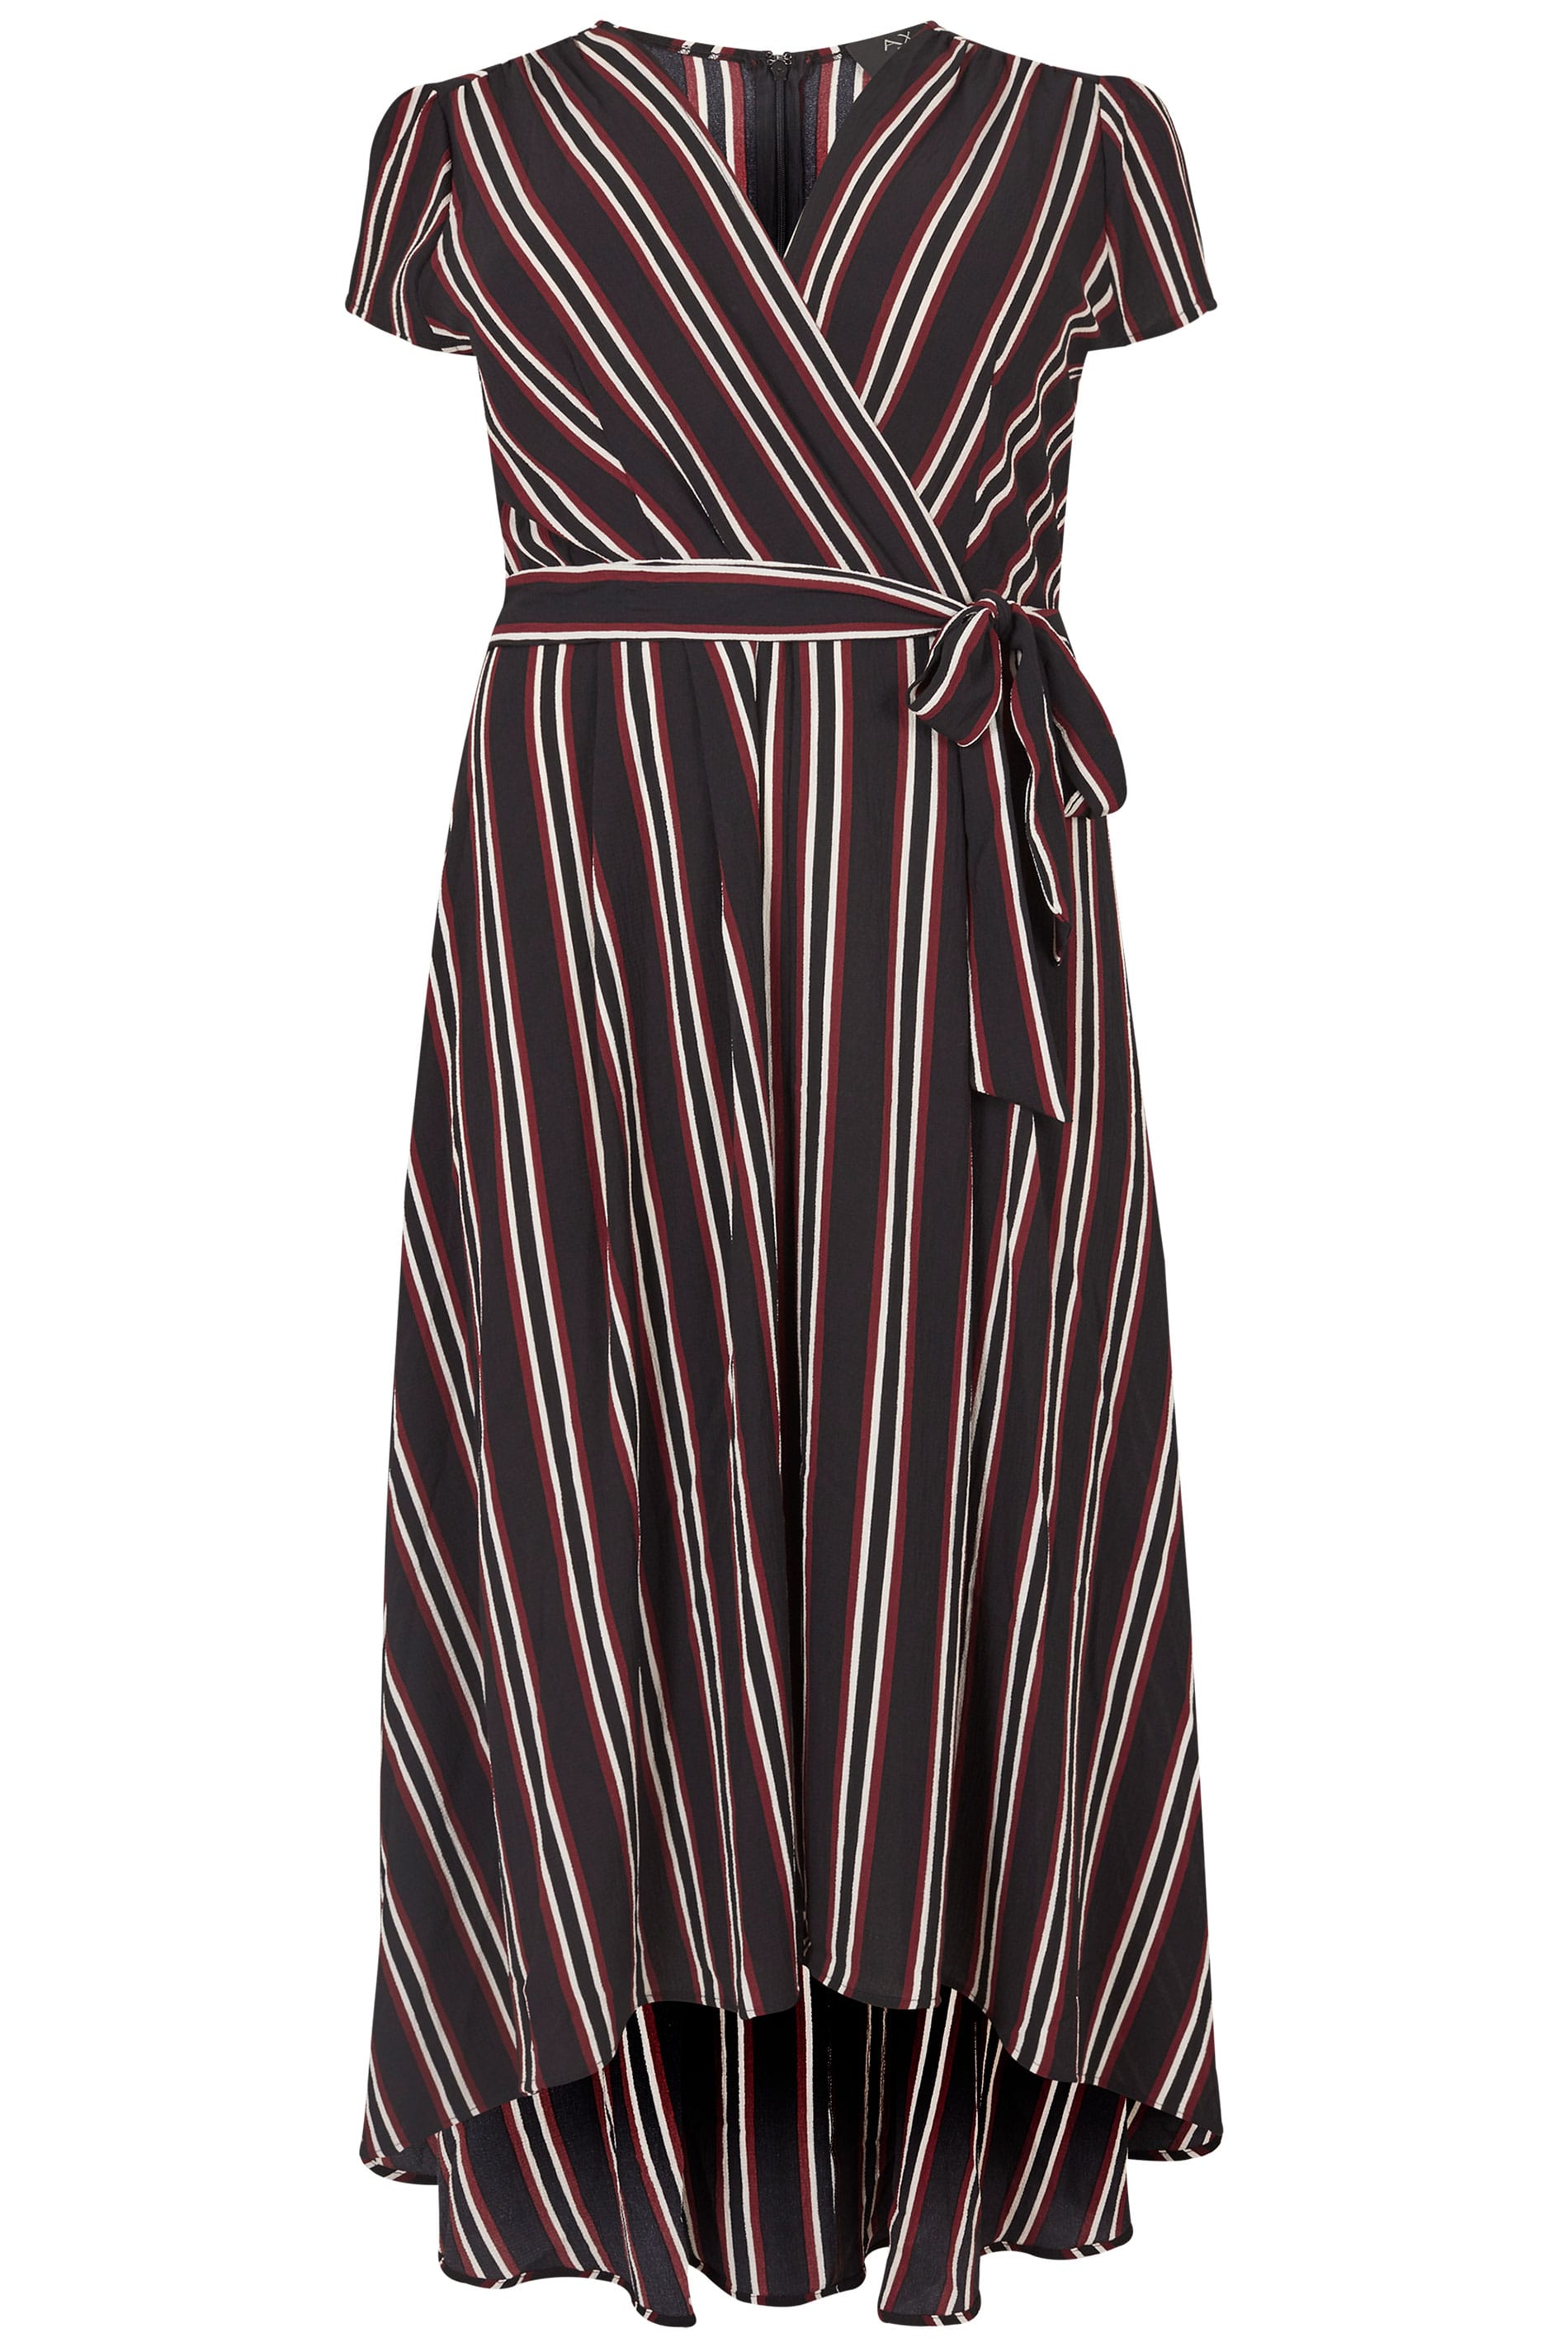 AX PARIS CURVE Black Stripe Wrap Dress, Plus size 16 to 26